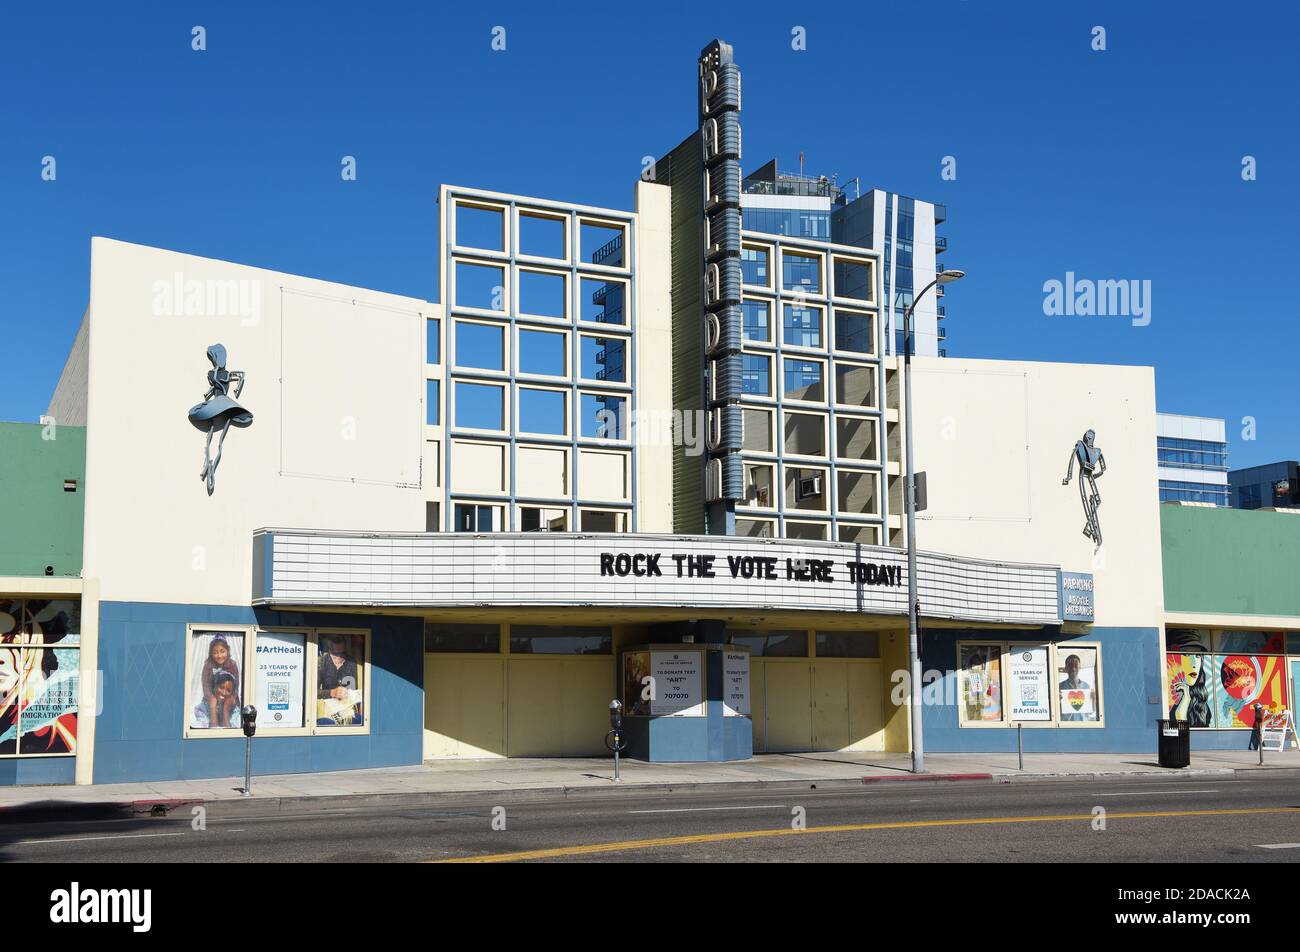 HOLLYWOOD, CALIFORNIA - 10 DE NOVIEMBRE de 2020: El paladio de Hollywood, un teatro construido en el moderne del aerodinamizar, estilo Art Deco. Foto de stock